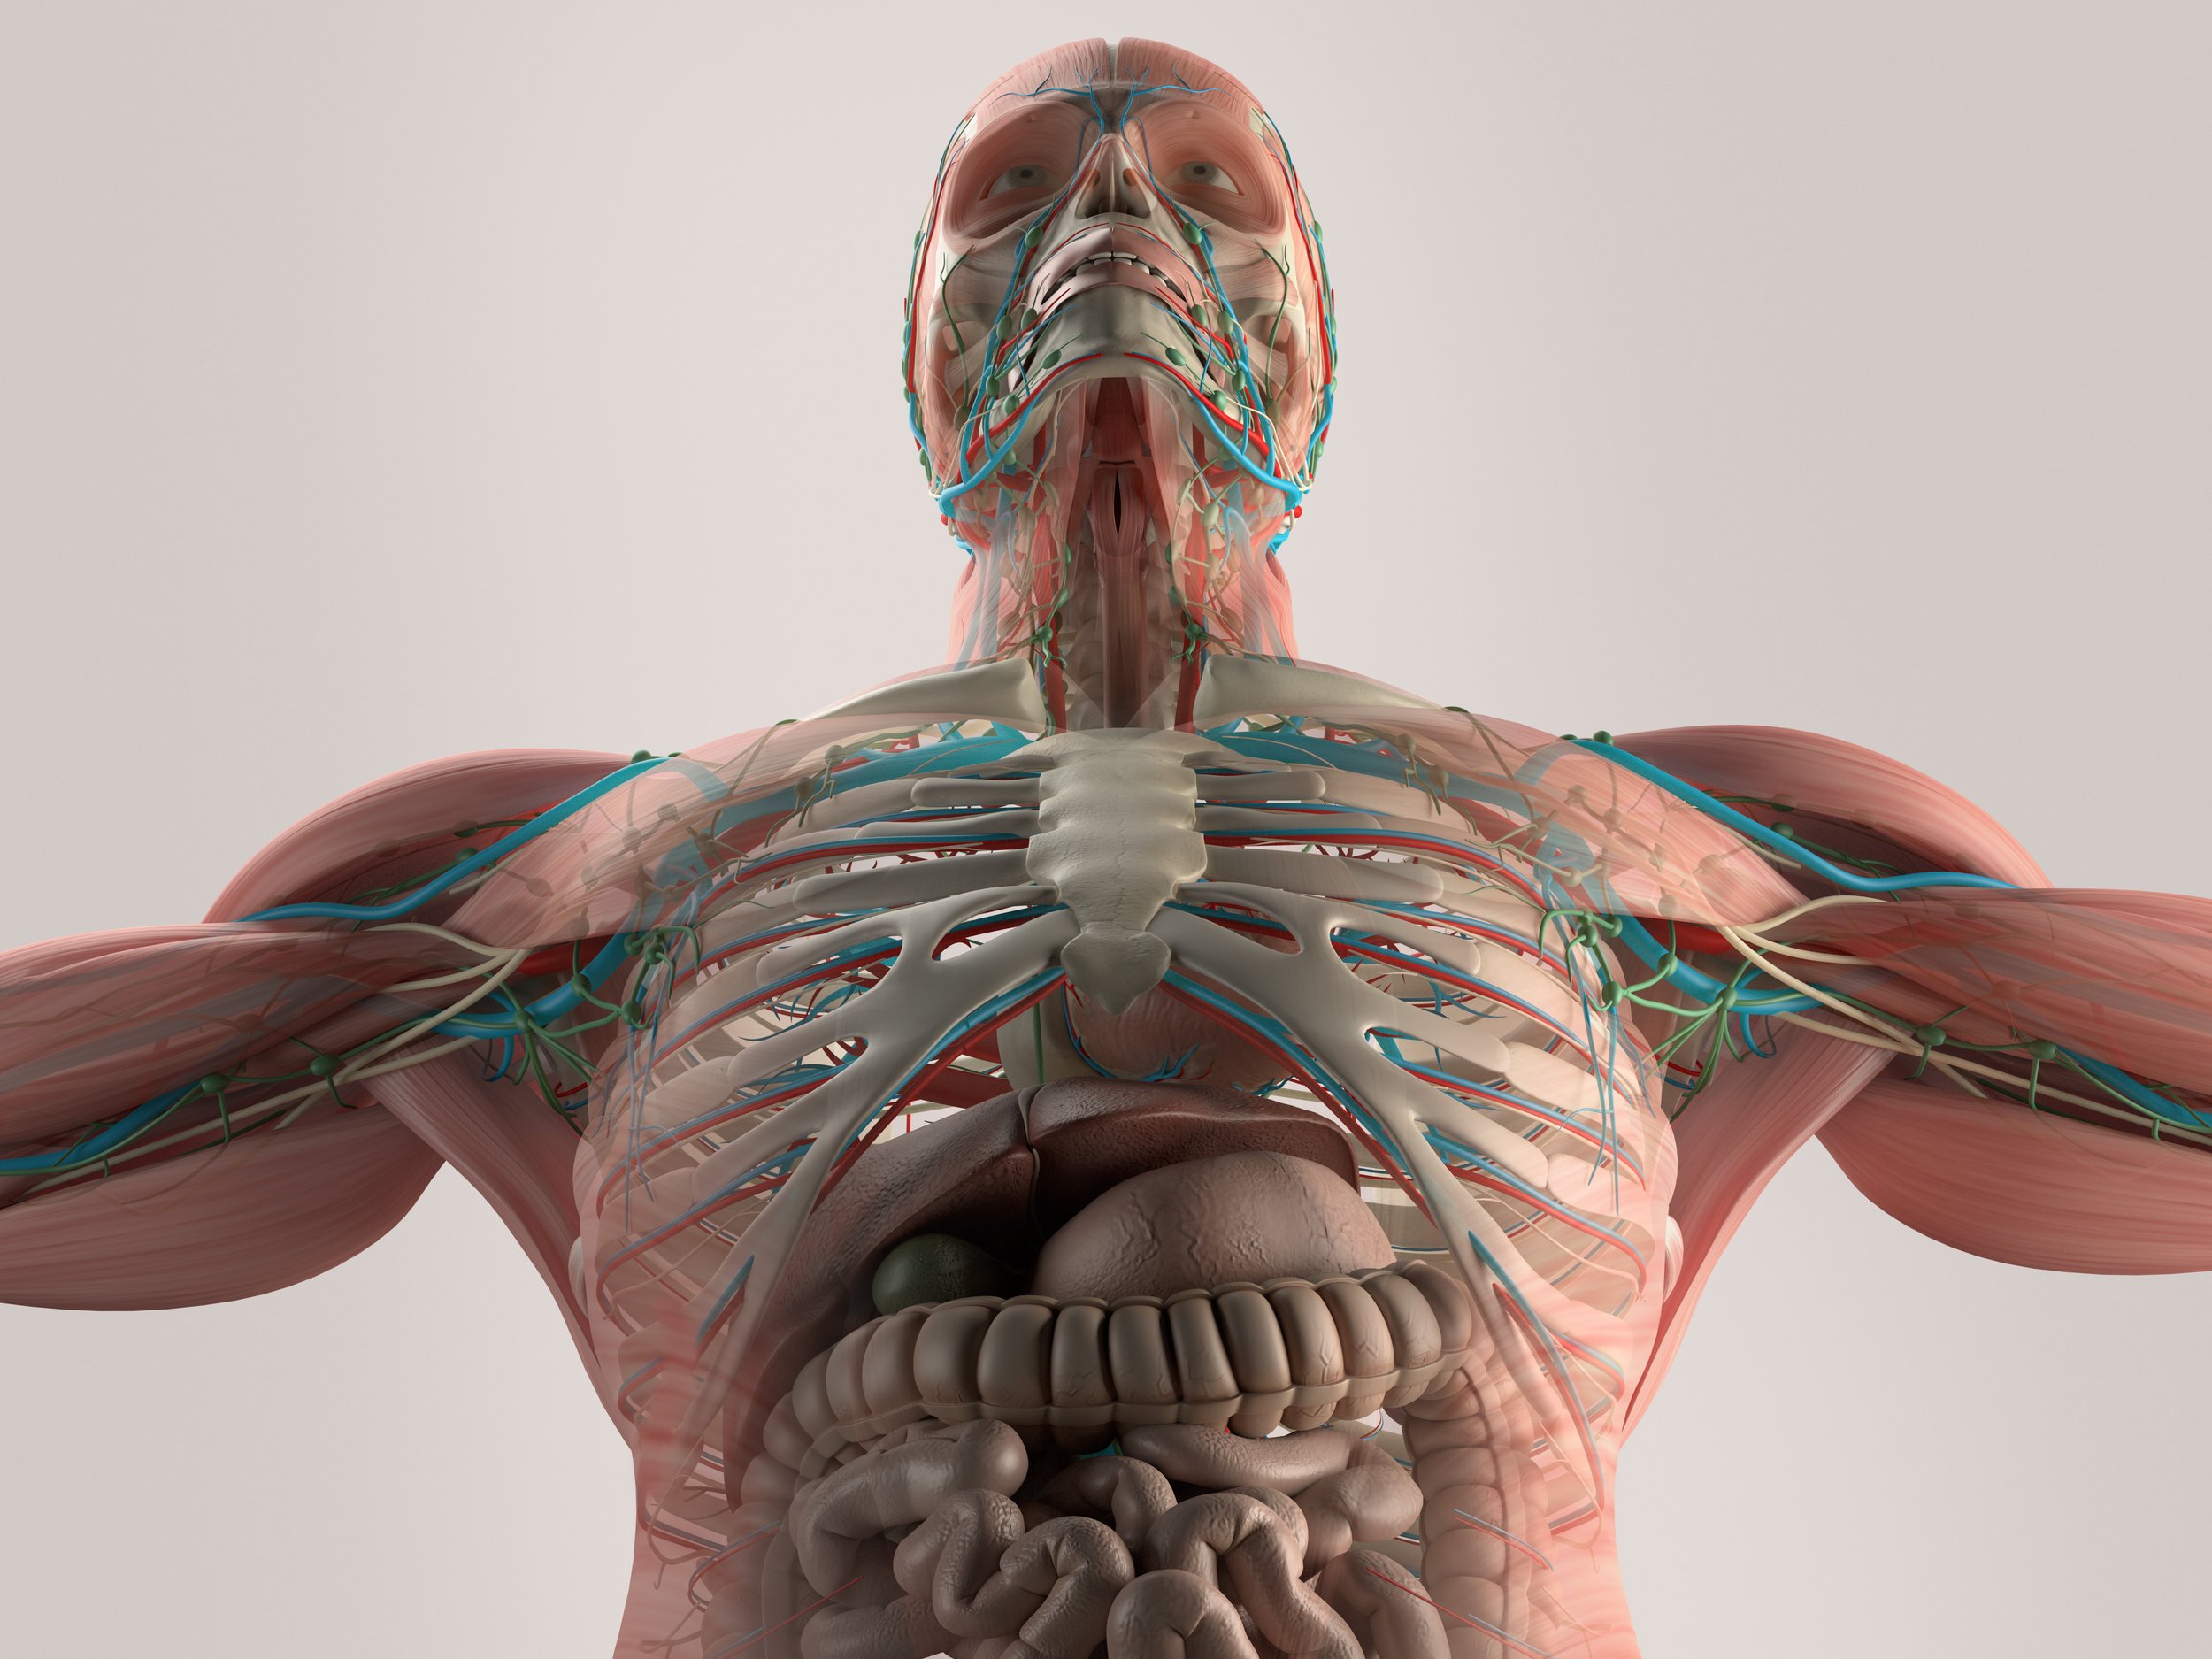 Боли внутри тела. Анатомия человека. Тело человека. Организм человека. Внутренние органы человека 3д.